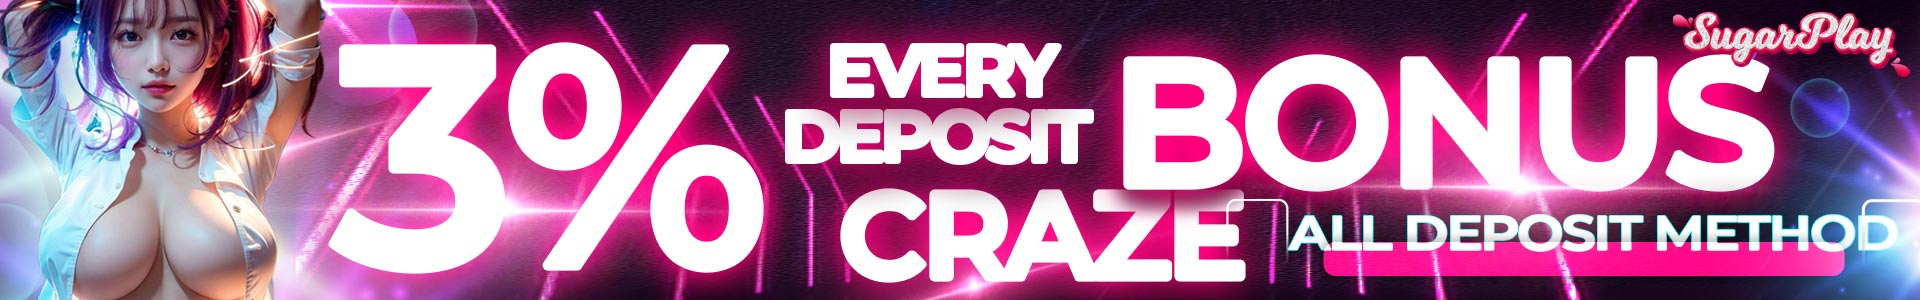 Deposit Bonus Craze